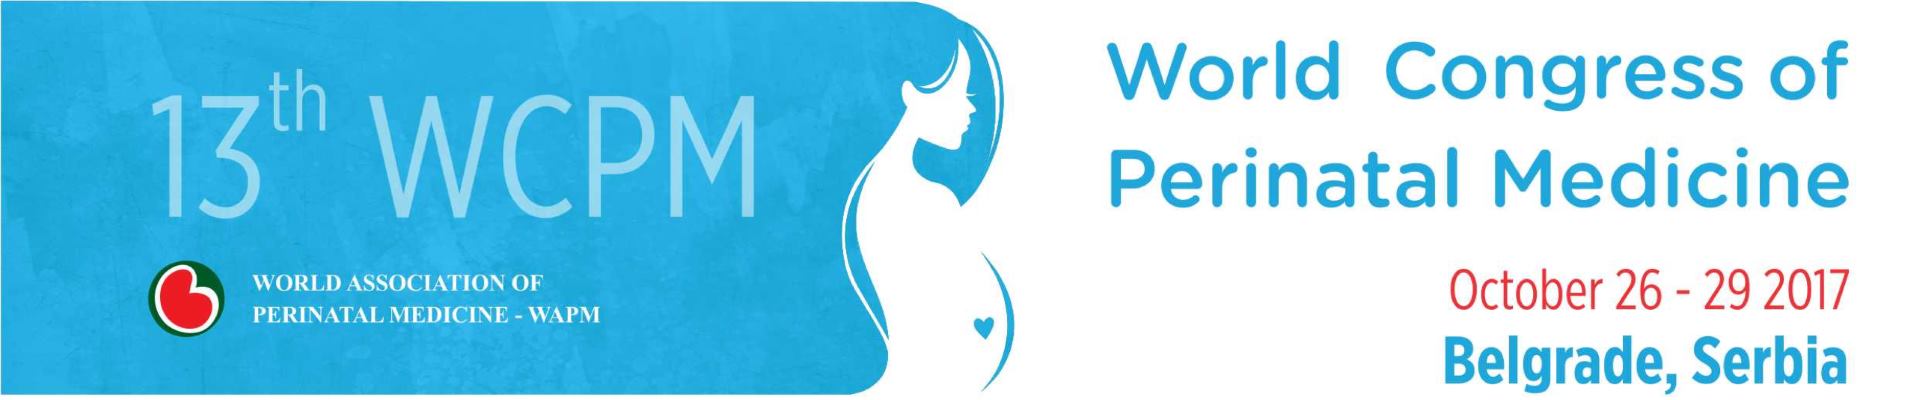 Svjetski kongres perinatalne medicine (WCPM) u Gradu Beogradu od 26. do 29. listopada